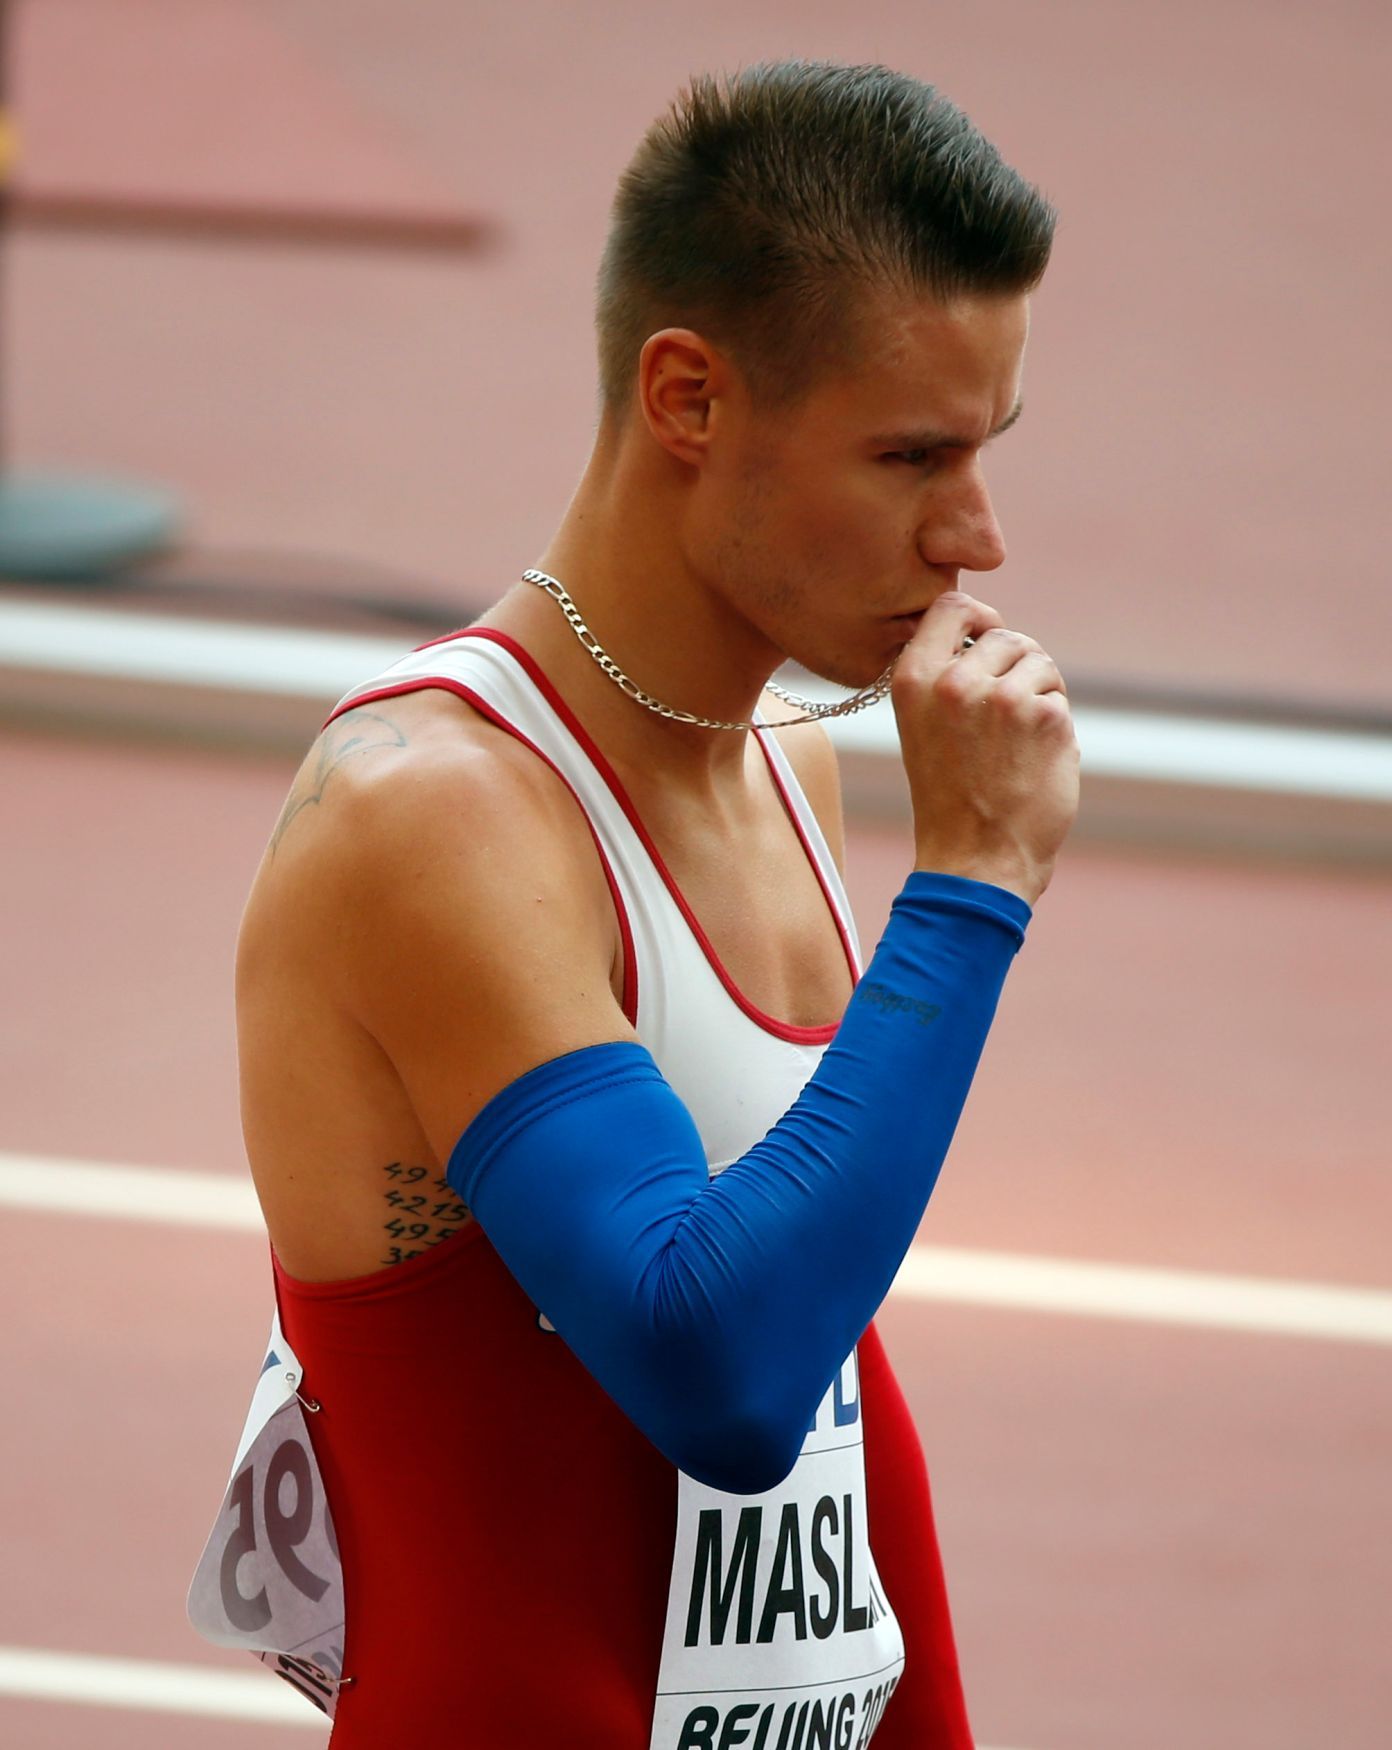 MS v atletice 2015, 400 m: Pavel Maslák